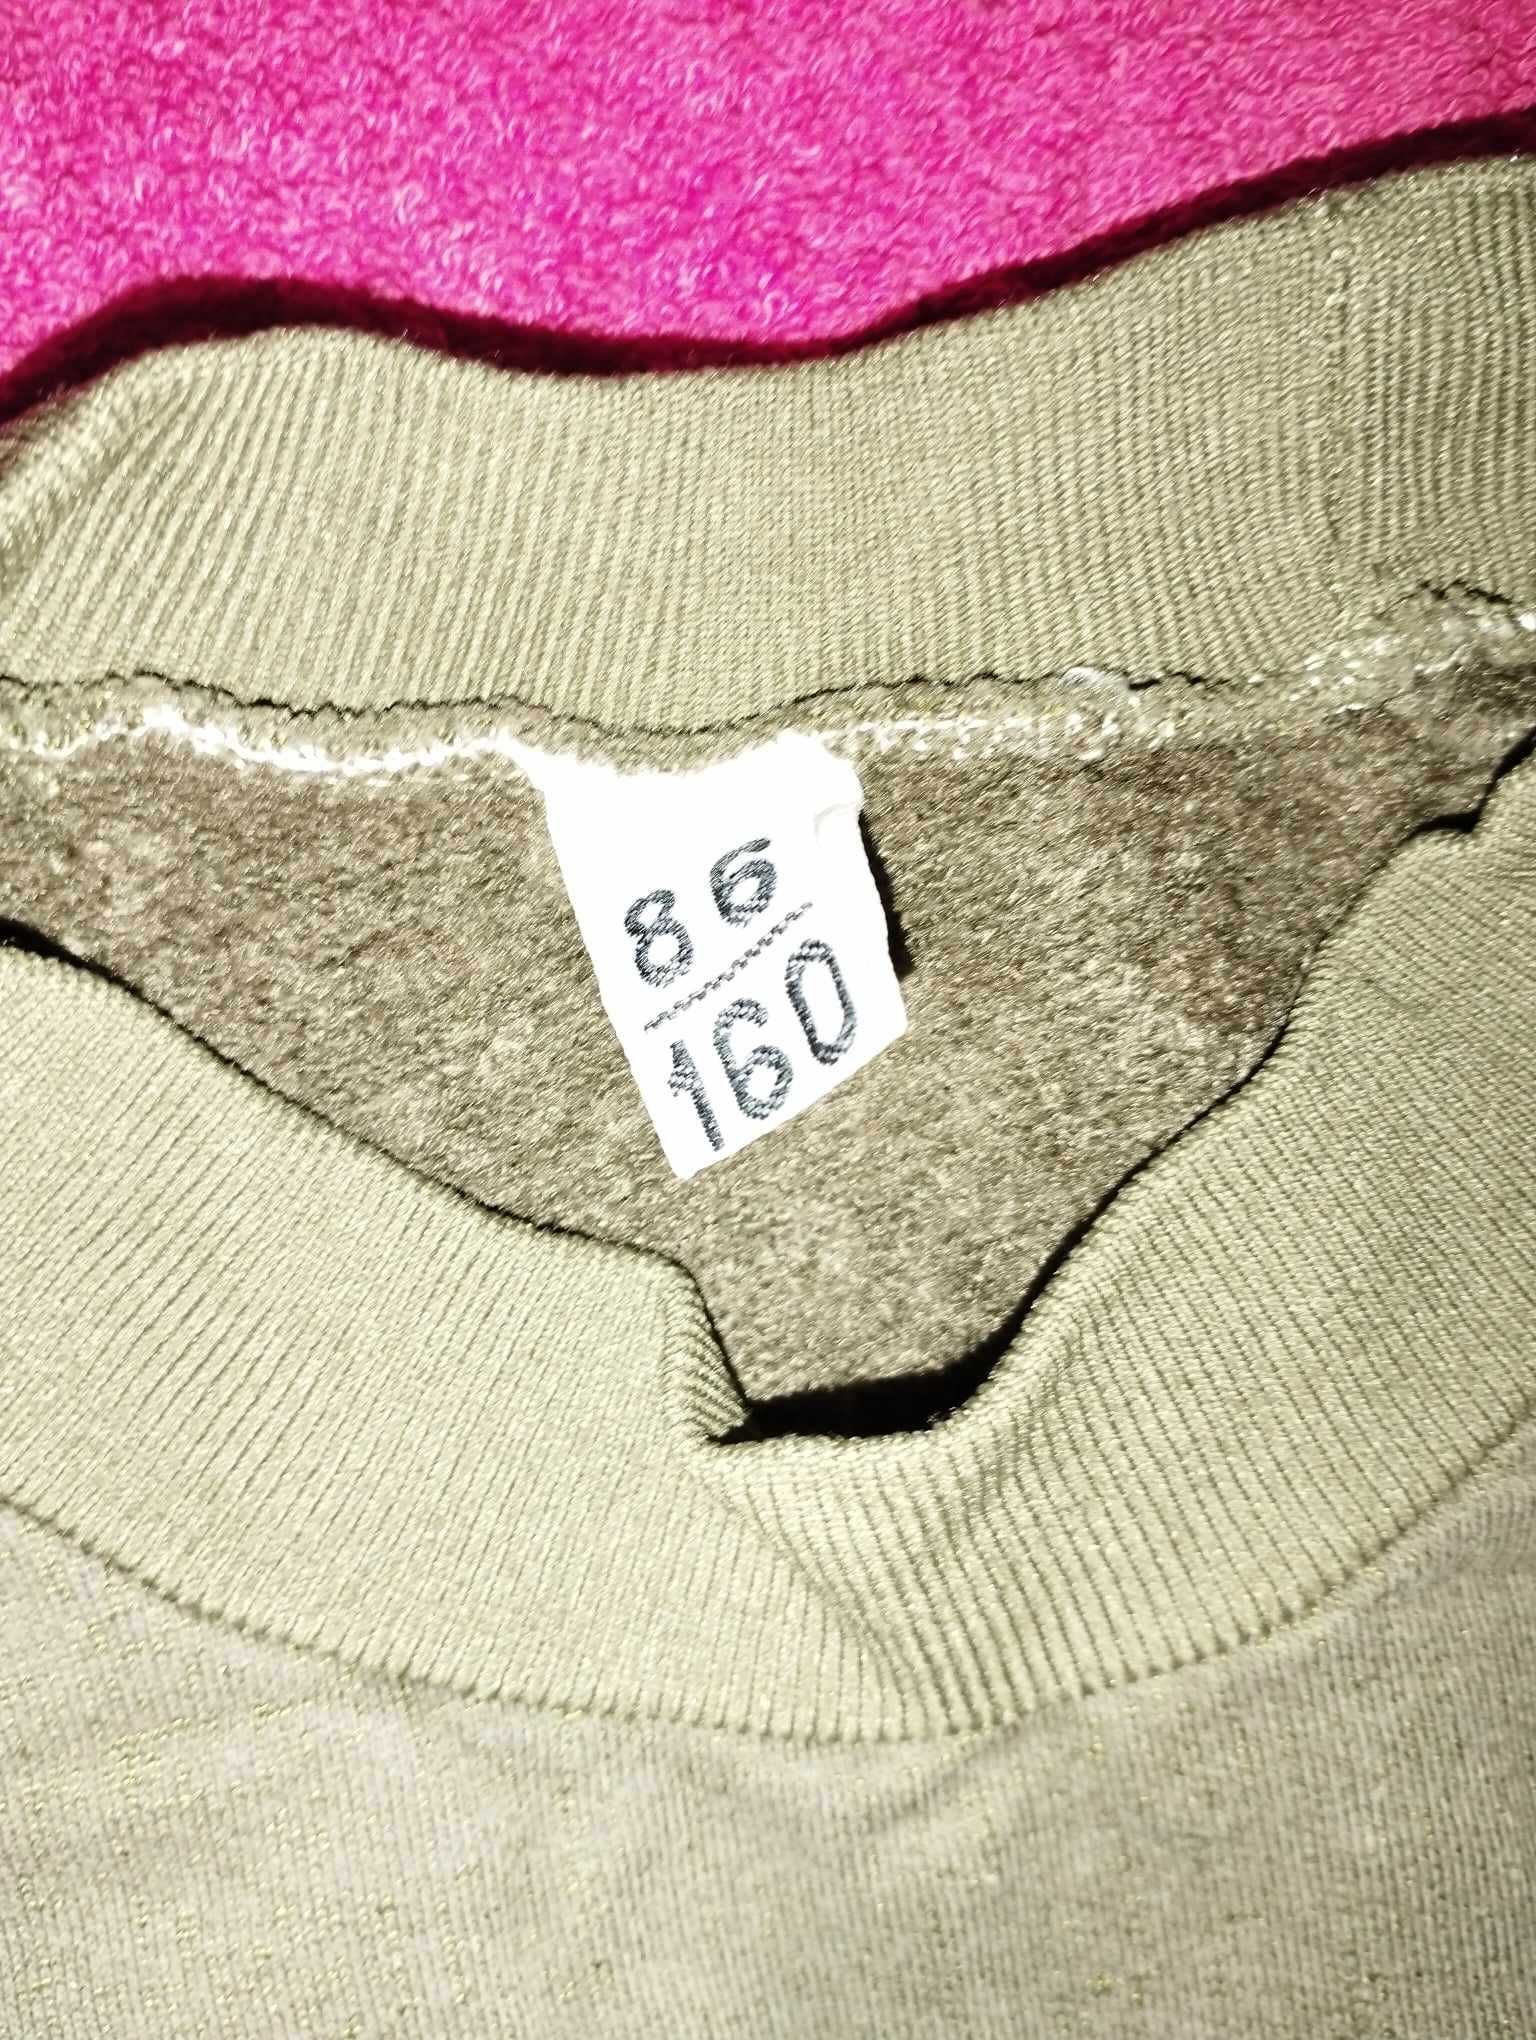 Bluza dres wojskowa typu "Ferdek" rozmiar 86/160